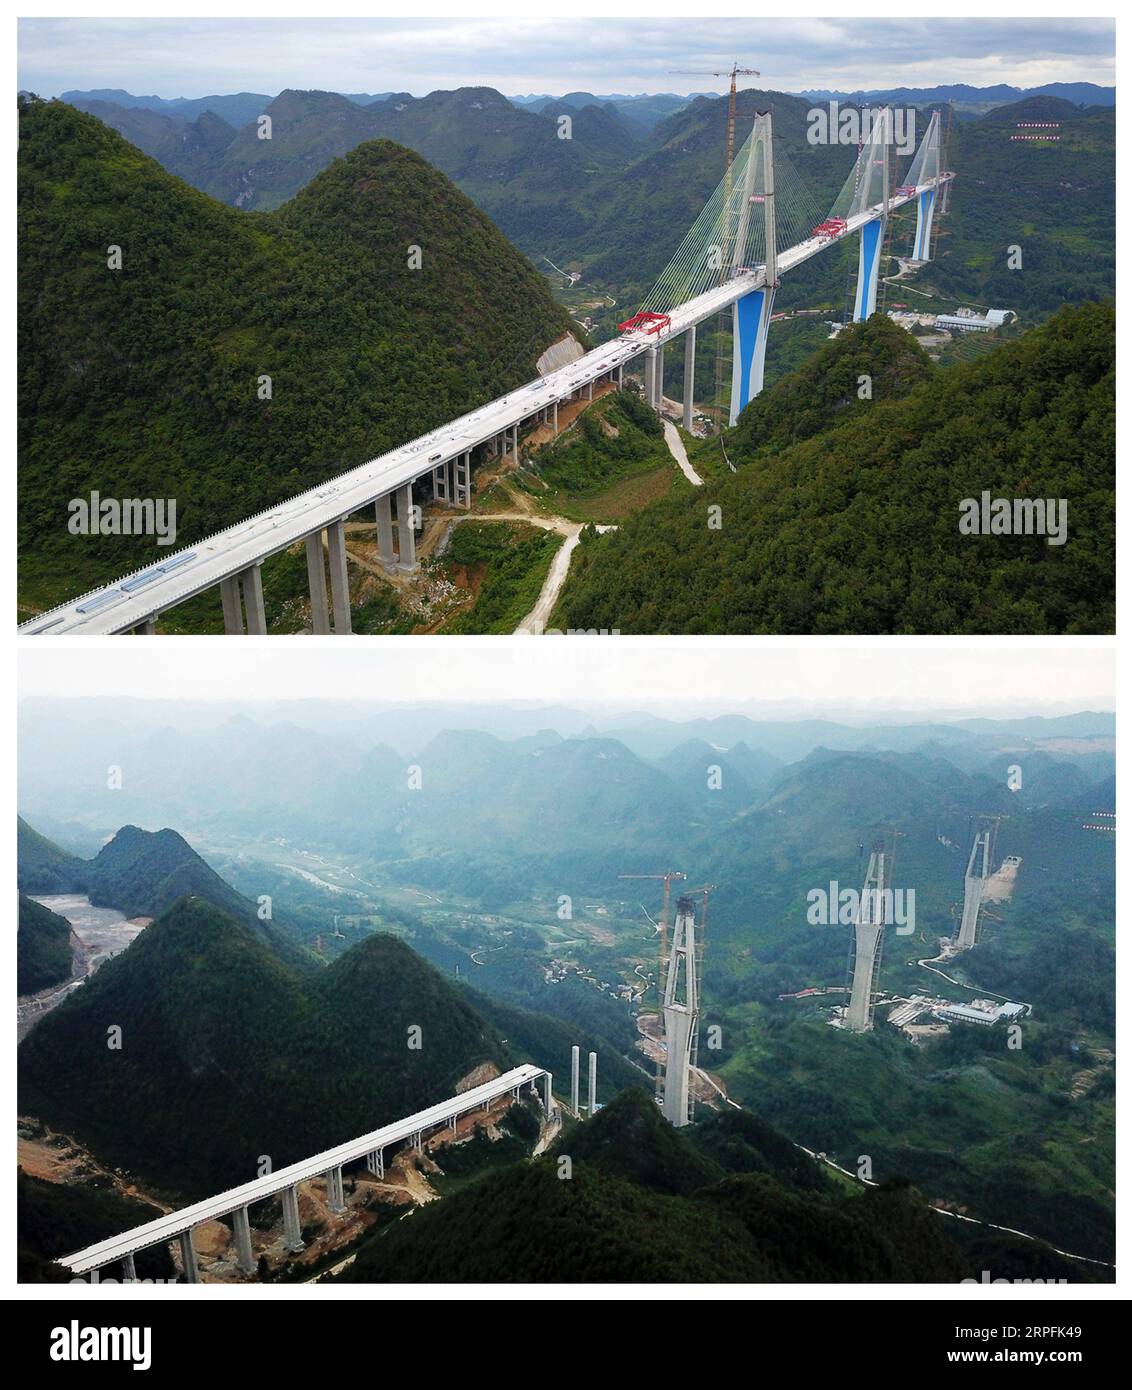 190926 -- PINGTANG, 26 septembre 2019 -- une photo aérienne combinée montre le pont de Pingtang dans la province du Guizhou du sud-ouest de la Chine, le 20 septembre 2019 en haut et le 25 septembre 2018 respectivement. Le pont Pingtang a achevé sa fermeture jeudi. Le pont, un colossal viaduc porté par câble d’une envergure de 2 135 mètres, servira de liaison majeure sur l’autoroute Pingtang-Luodian au-dessus du canyon de la rivière Caodu. Le pont sera achevé et ouvert à la circulation d'ici la fin de 2019, réduisant ainsi le temps de trajet entre Pingtang et Luodian de deux heures et demie à environ une heure. CHINE-GUIZHOU-PINGTANG B. Banque D'Images